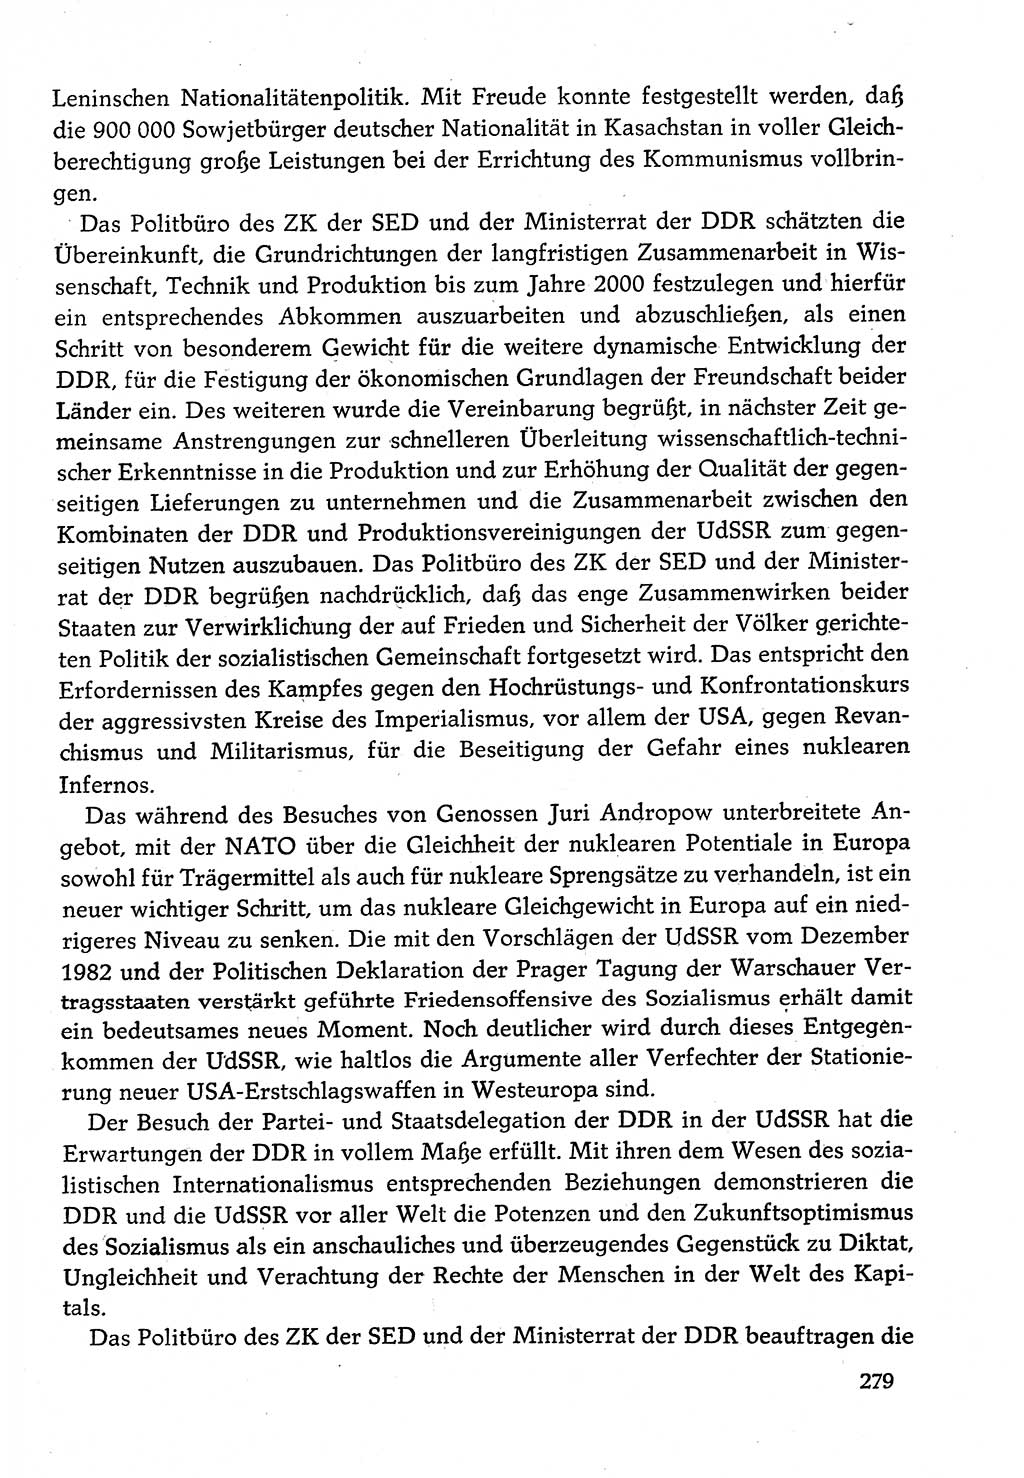 Dokumente der Sozialistischen Einheitspartei Deutschlands (SED) [Deutsche Demokratische Republik (DDR)] 1982-1983, Seite 279 (Dok. SED DDR 1982-1983, S. 279)